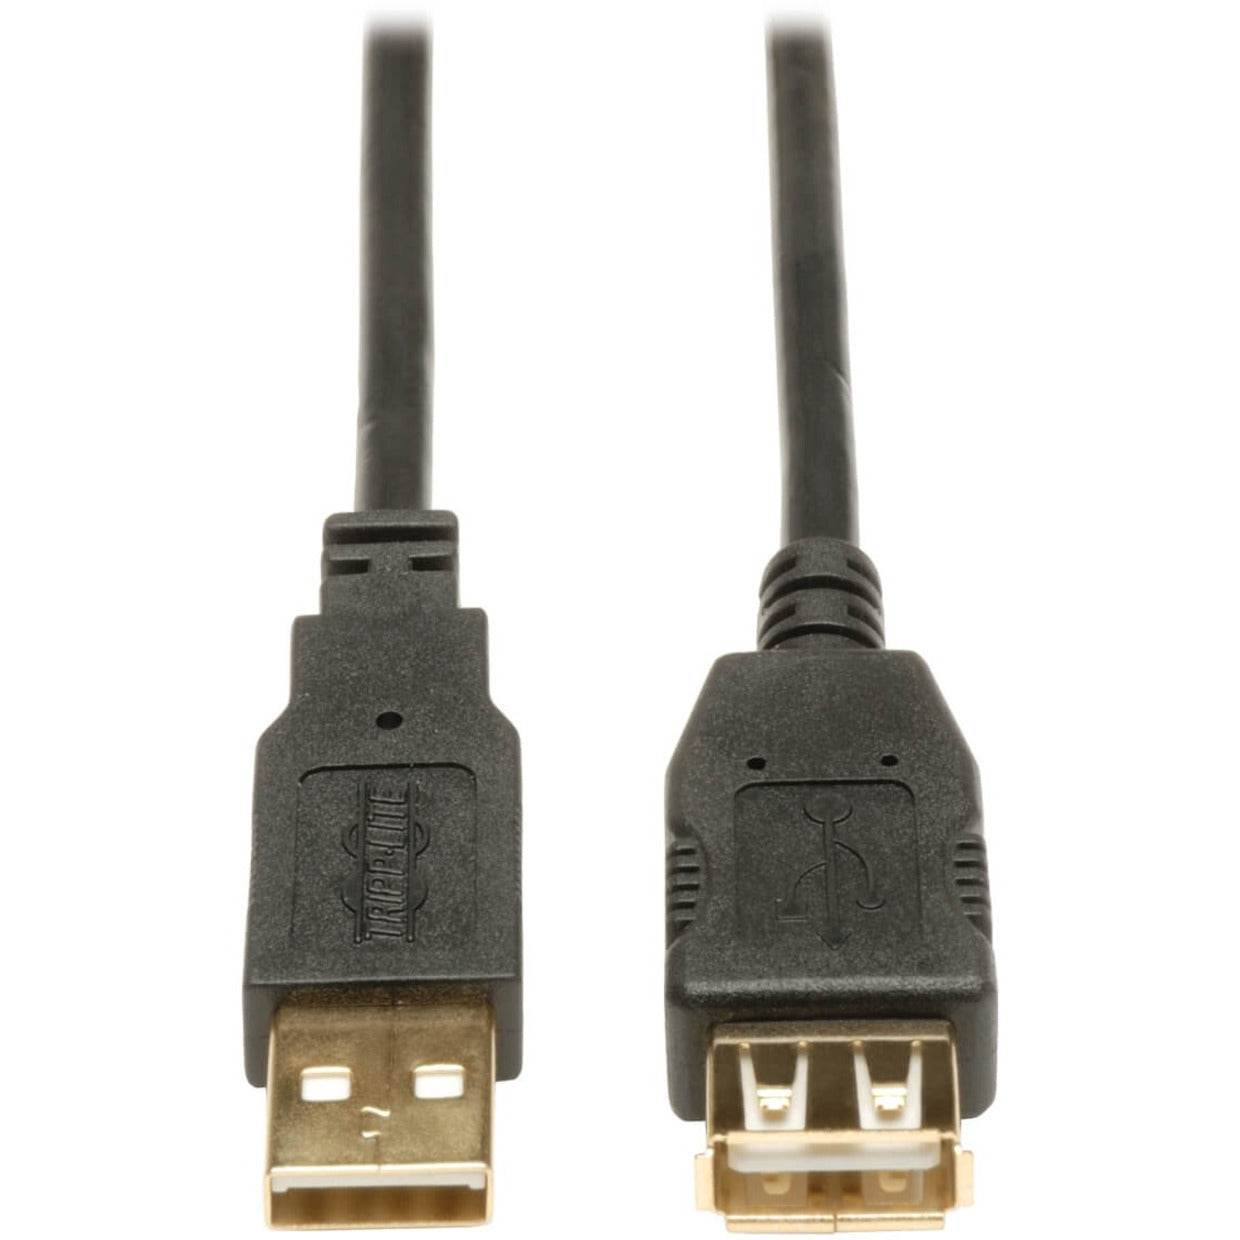 تريب لايت U024-010 كابل تمديد USB 2.0 سرعة عالية ، 10 قدم ، أسود العلامة التجارية: تريب لايت